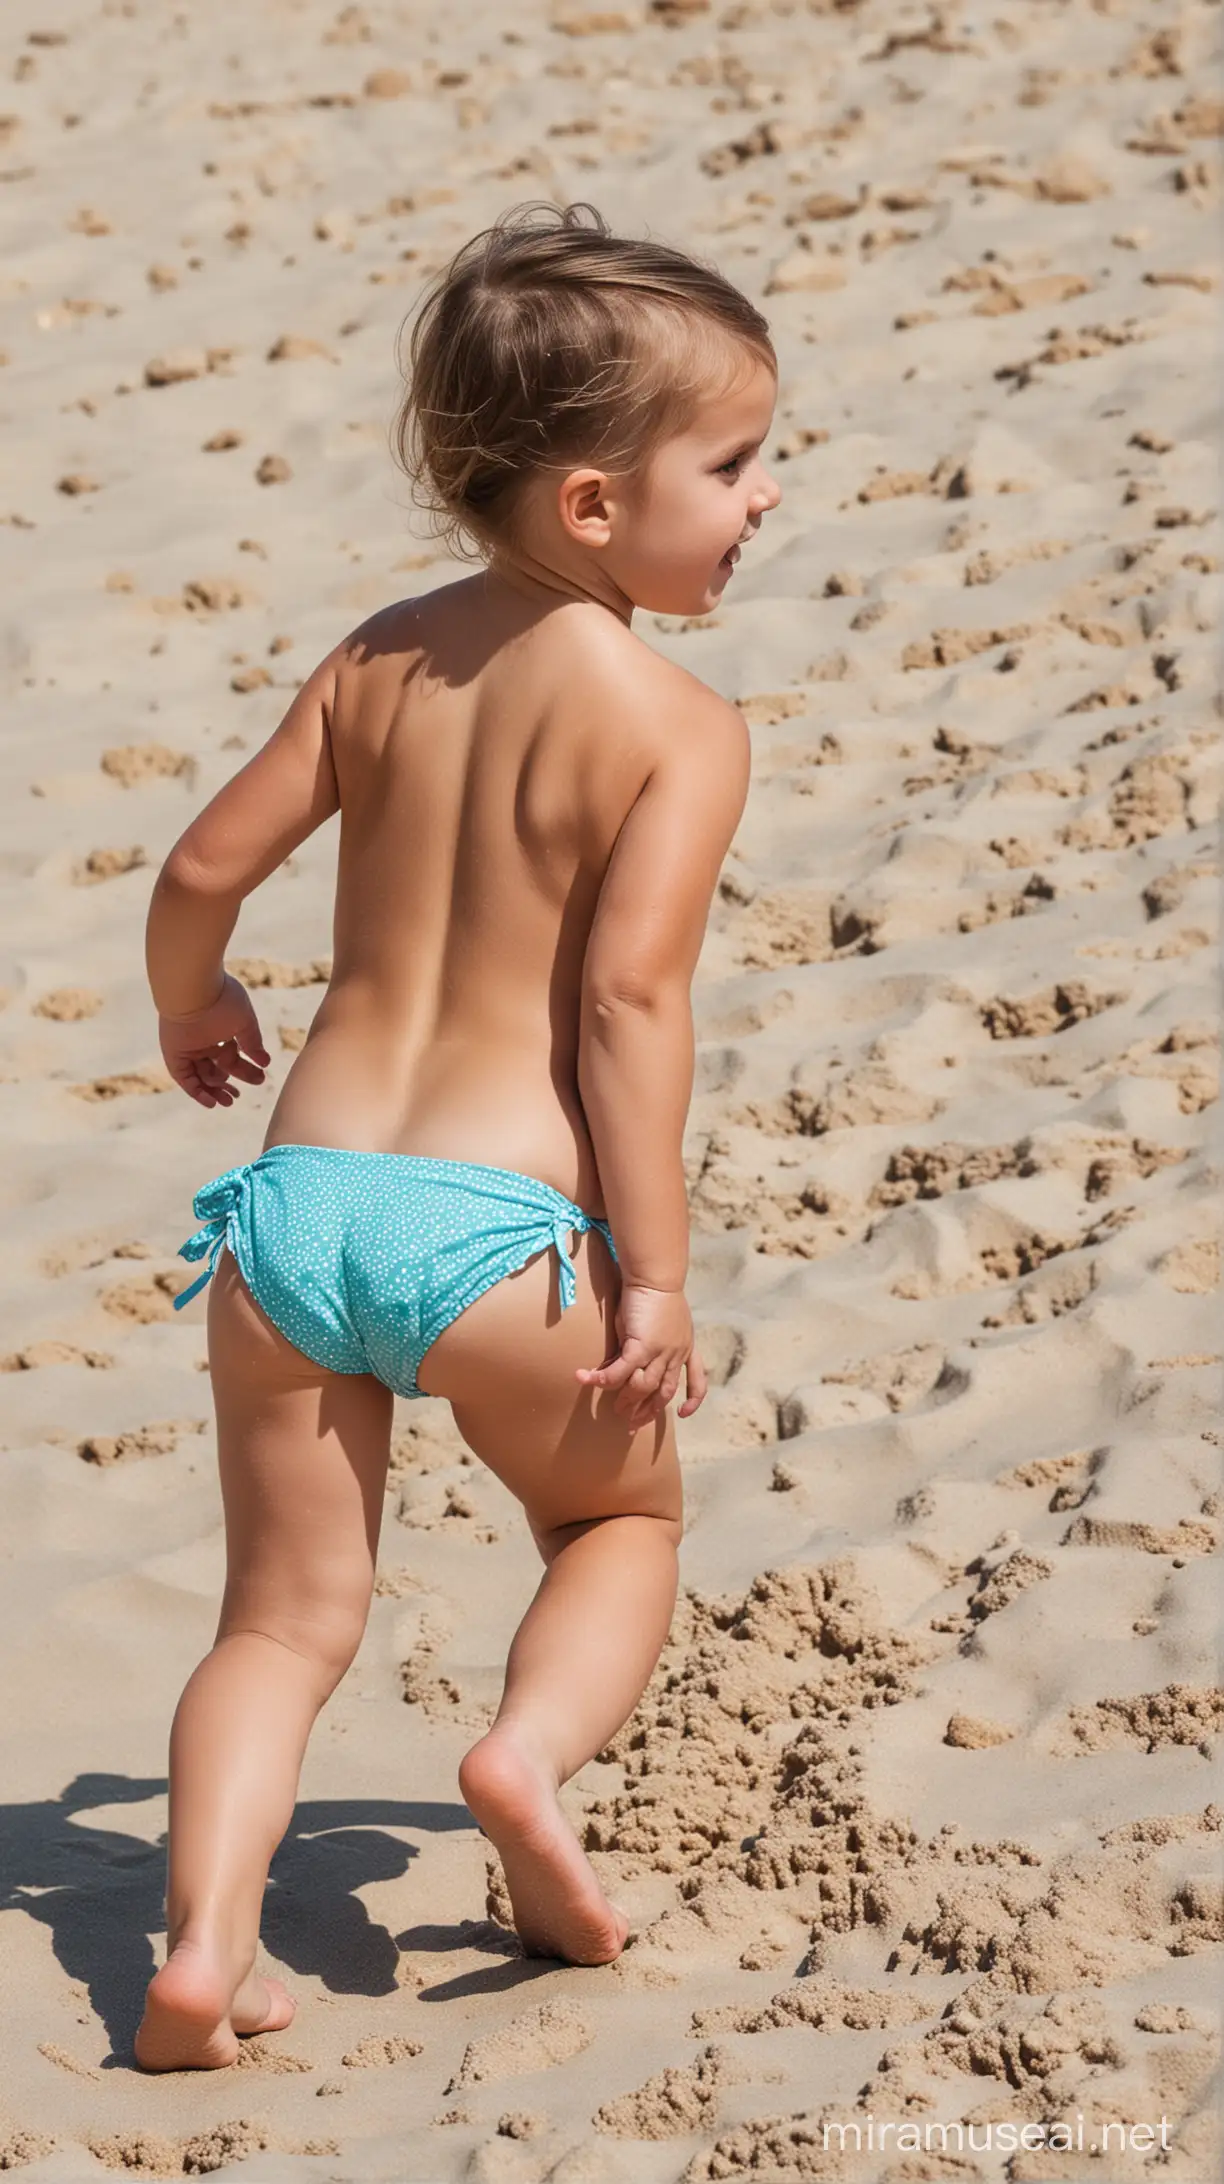 Young Girl in Bikini Enjoying Beachside Fun